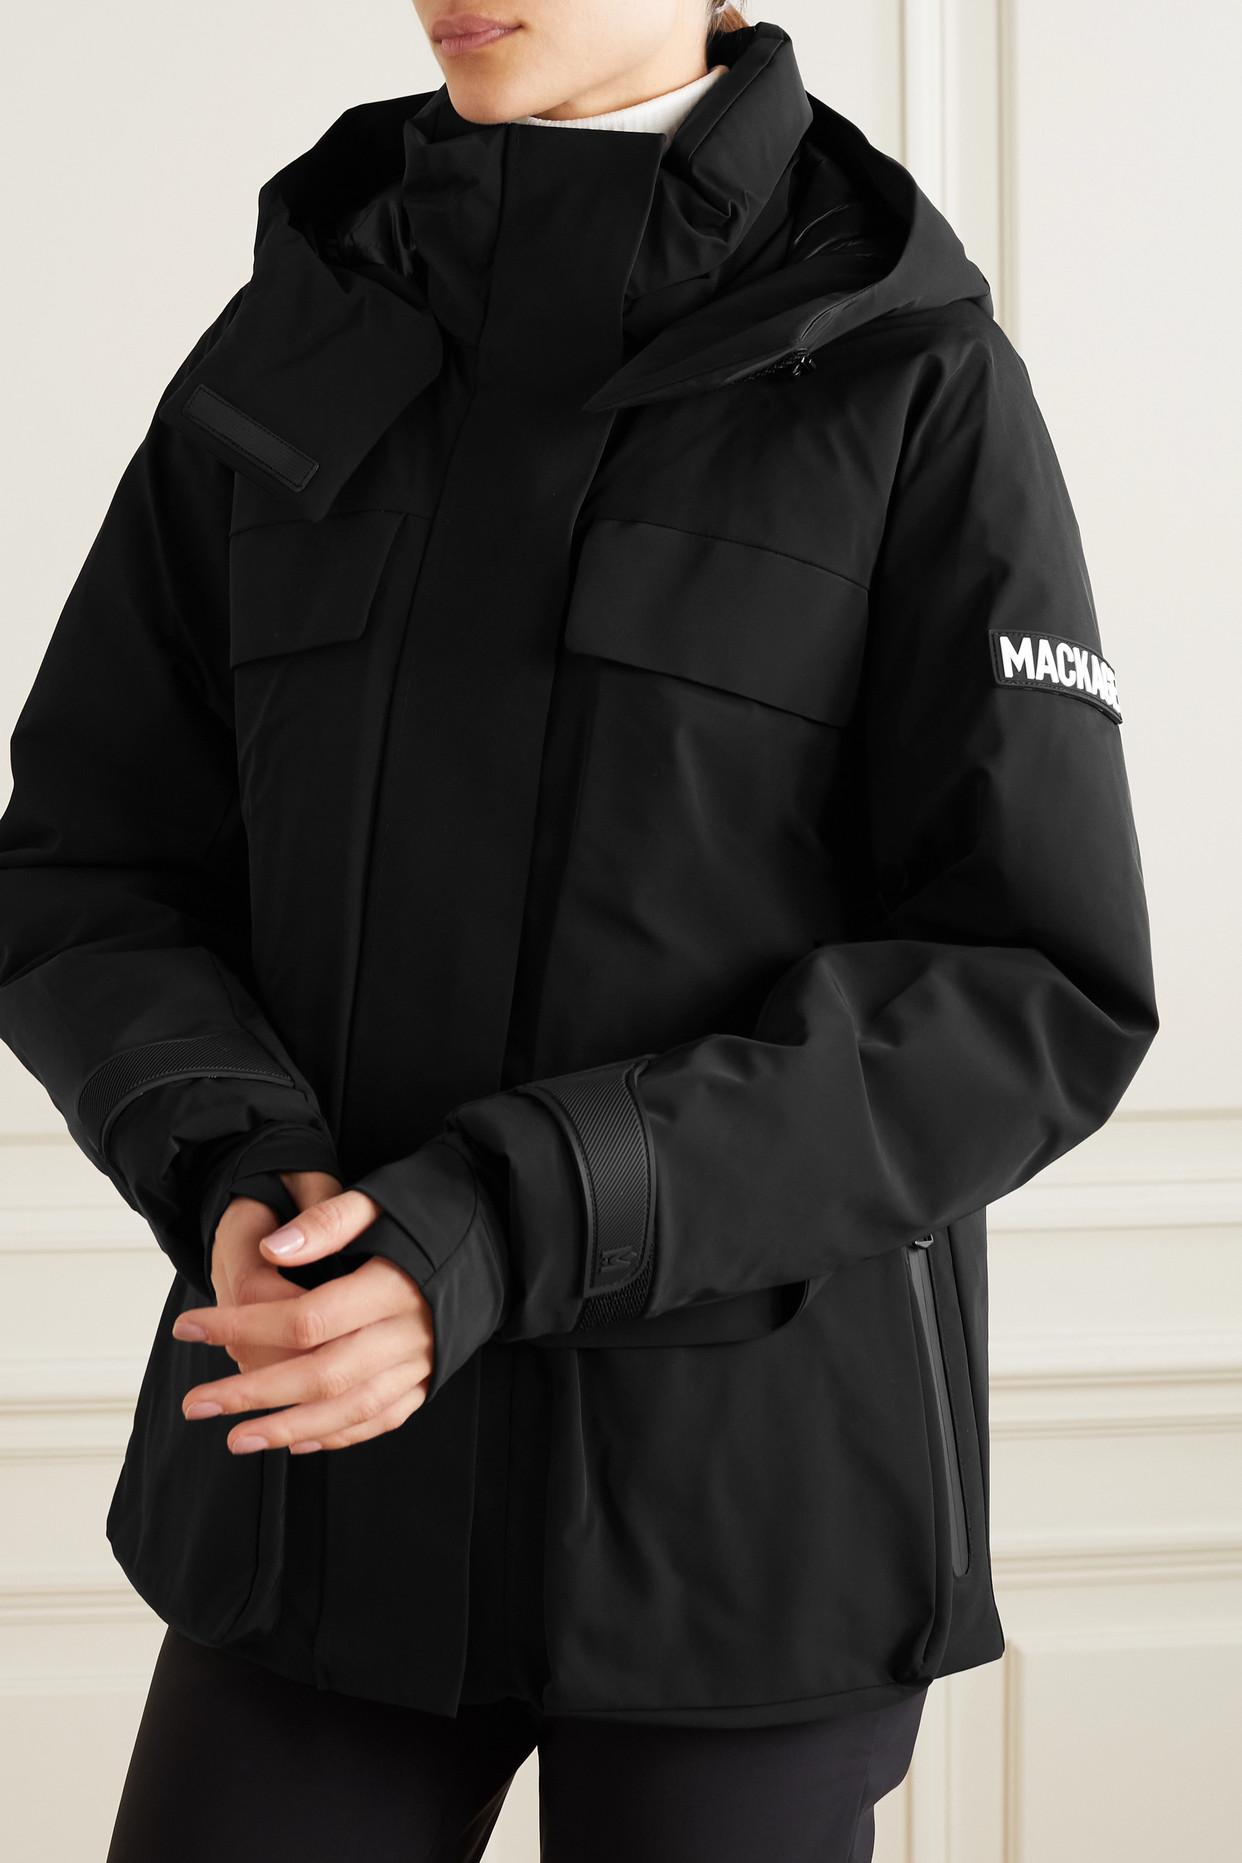 Mackage + Net Sustain Iclyn Hooded Padded Down Ski Jacket in Black | Lyst